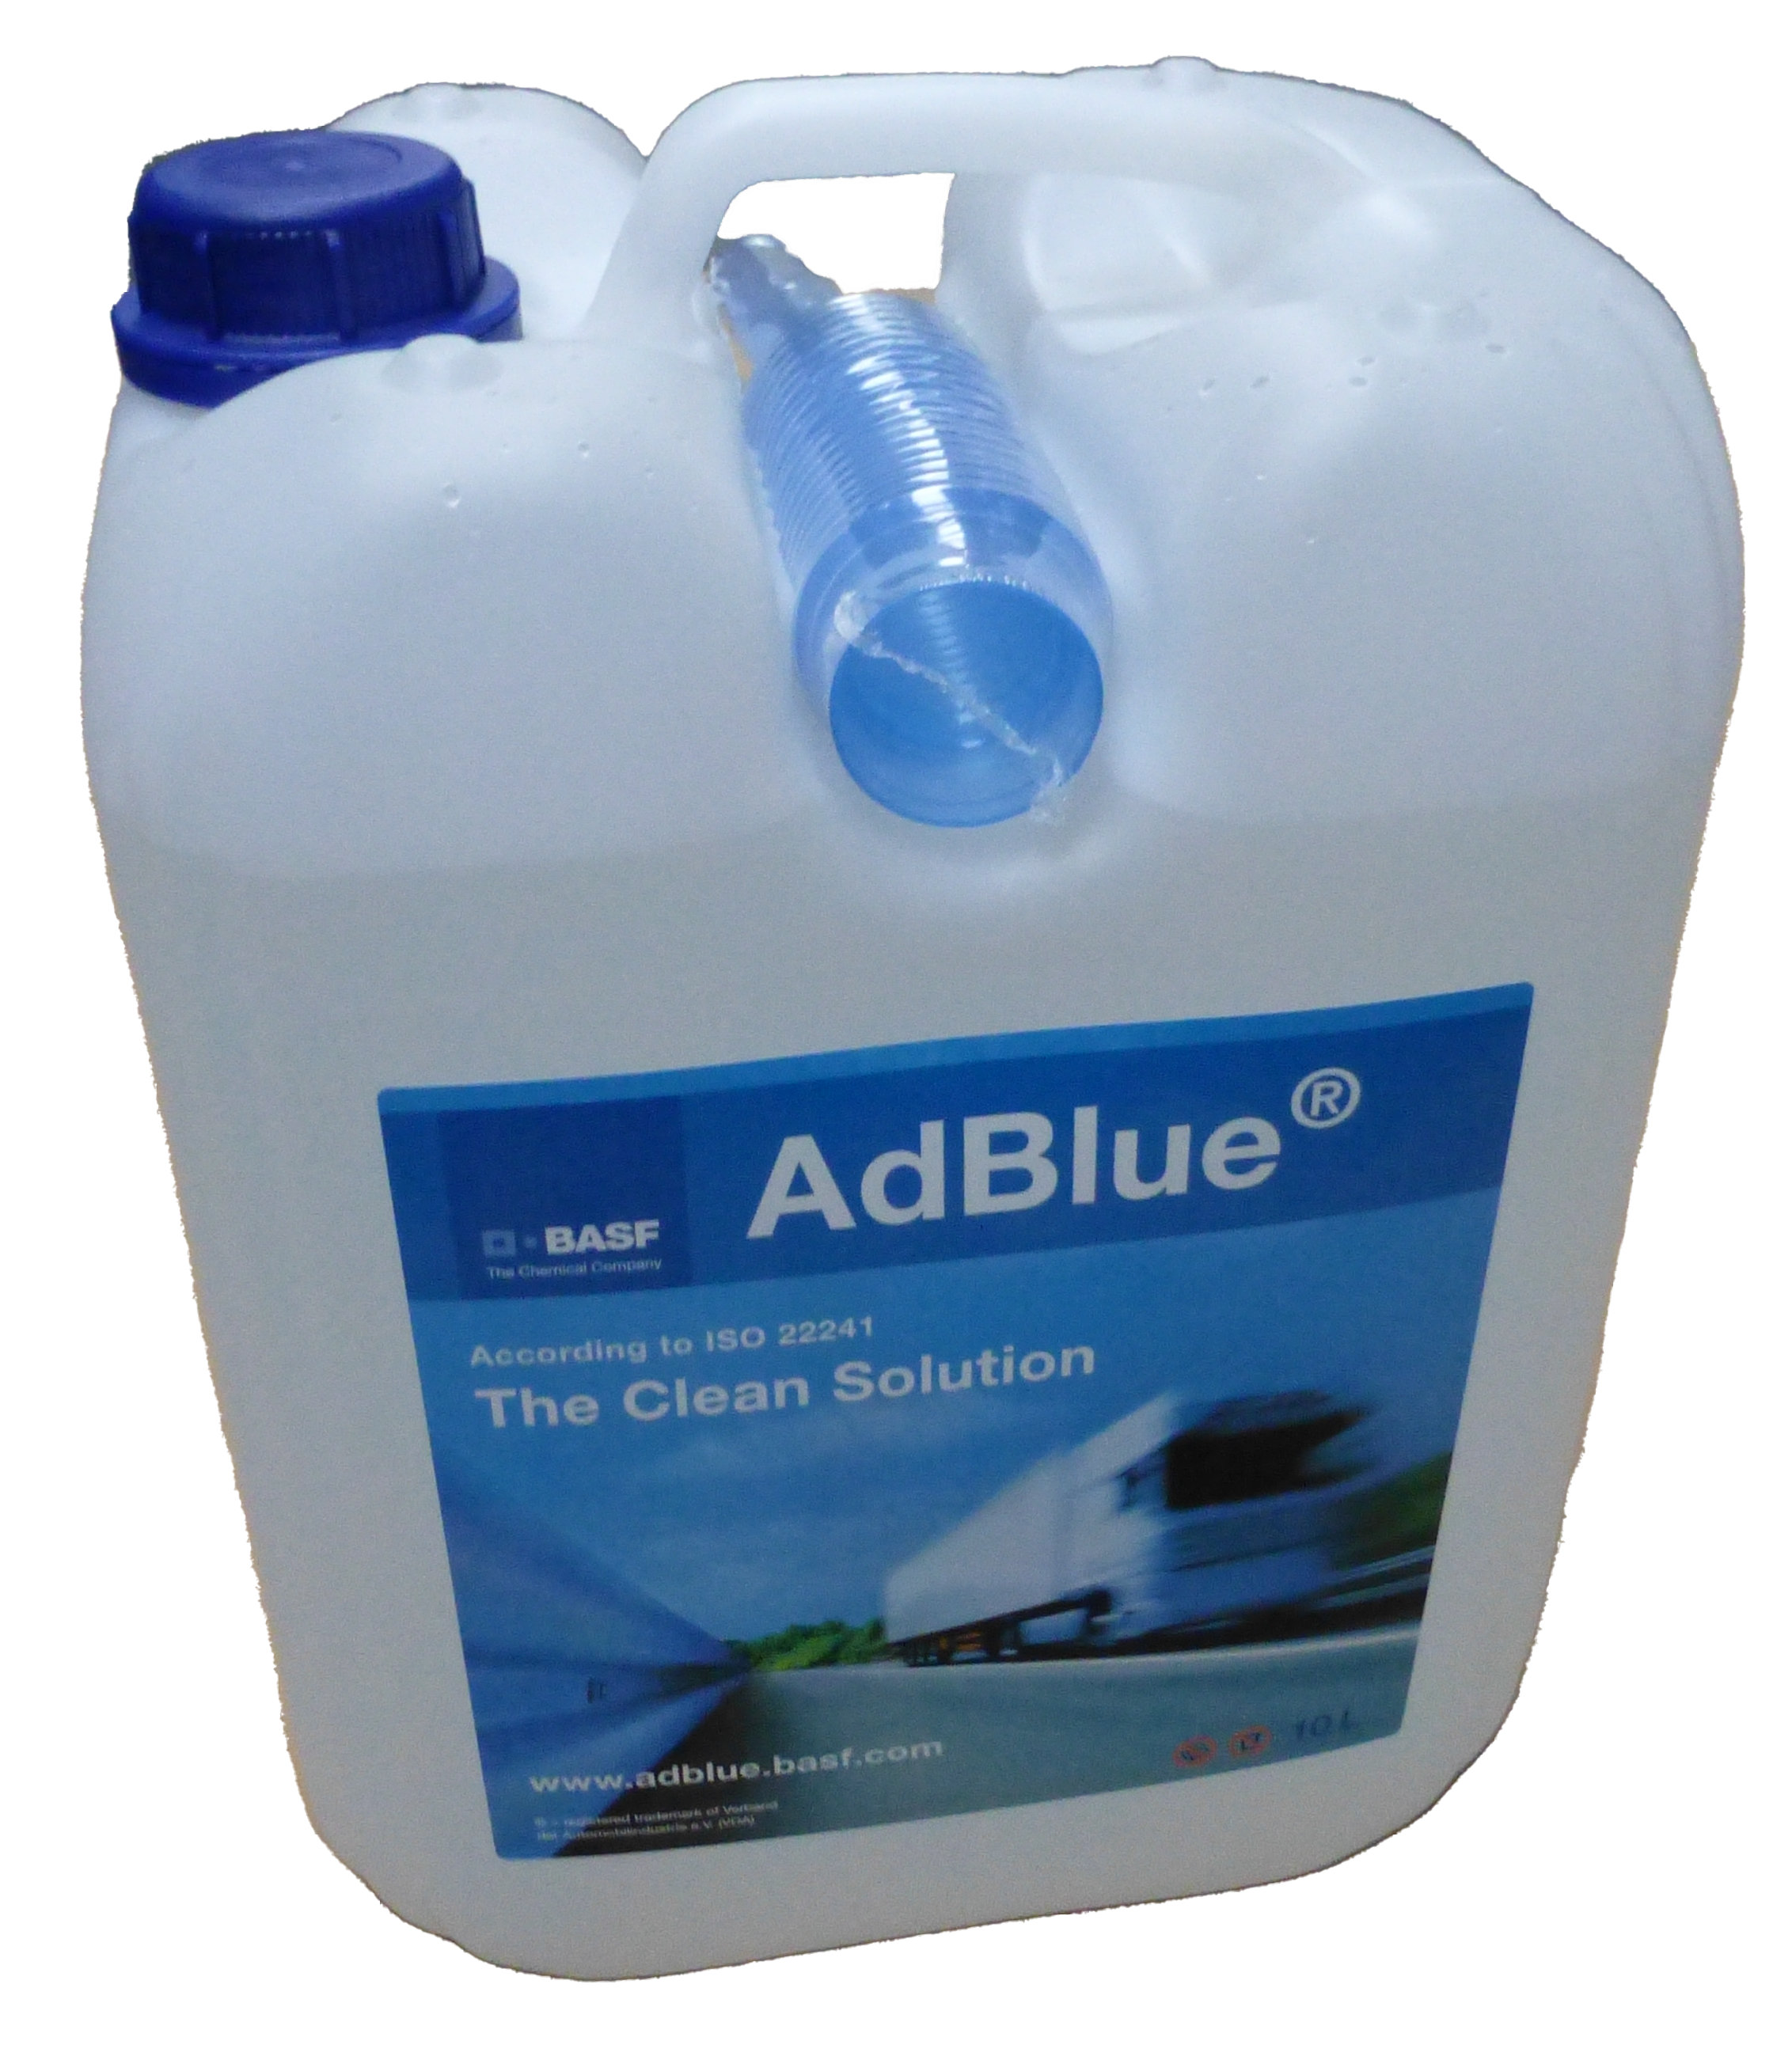 Electronicx AdBlue 20 Liter 2 X 10 Liter für Diesel Kanister  Harnstofflösung gemäß ISO 22241/1 DIN 70070 VDA lizenziert für  SCR-Abgasnachbehandlung Ad Blue Adblue kaufen einfüllstutzen : :  Auto & Motorrad